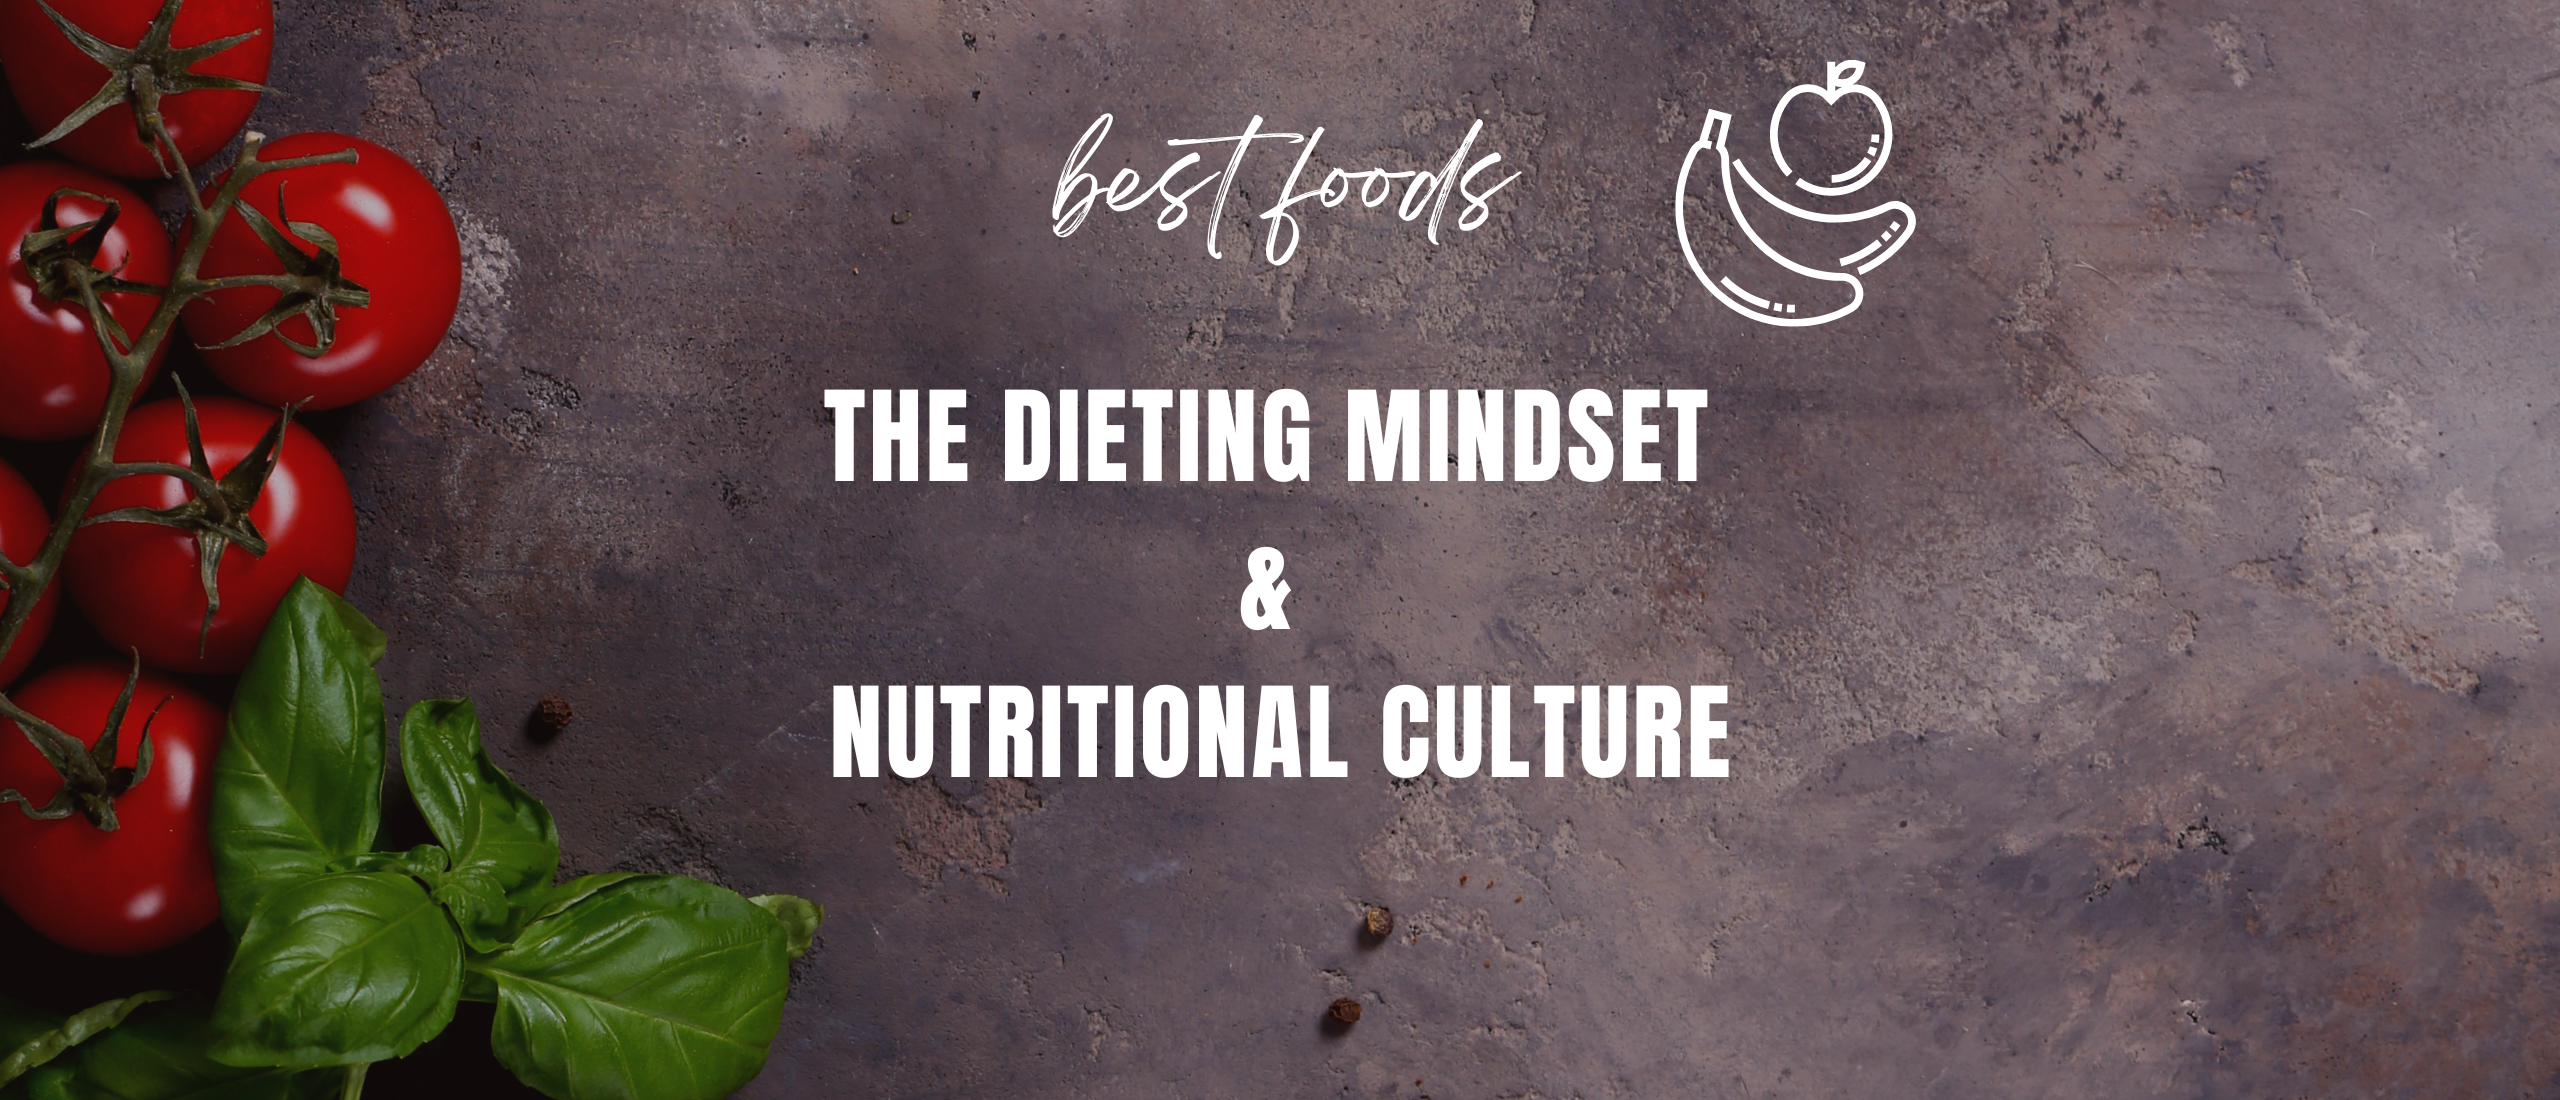 De dieet mentaliteit en voedingscultuur